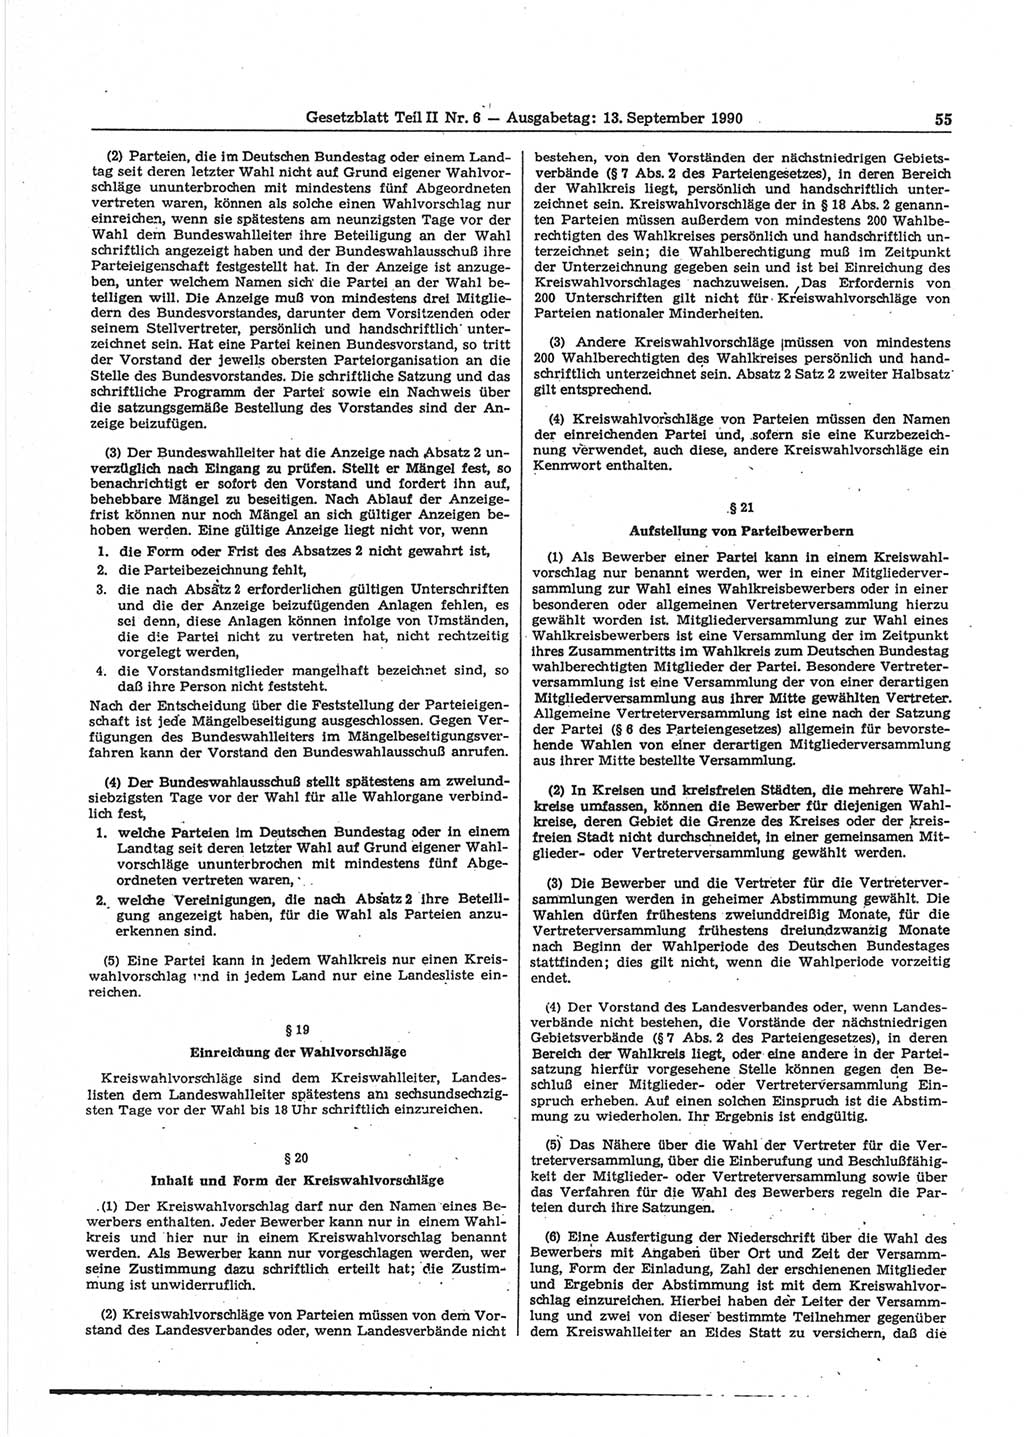 Gesetzblatt (GBl.) der Deutschen Demokratischen Republik (DDR) Teil ⅠⅠ 1990, Seite 55 (GBl. DDR ⅠⅠ 1990, S. 55)